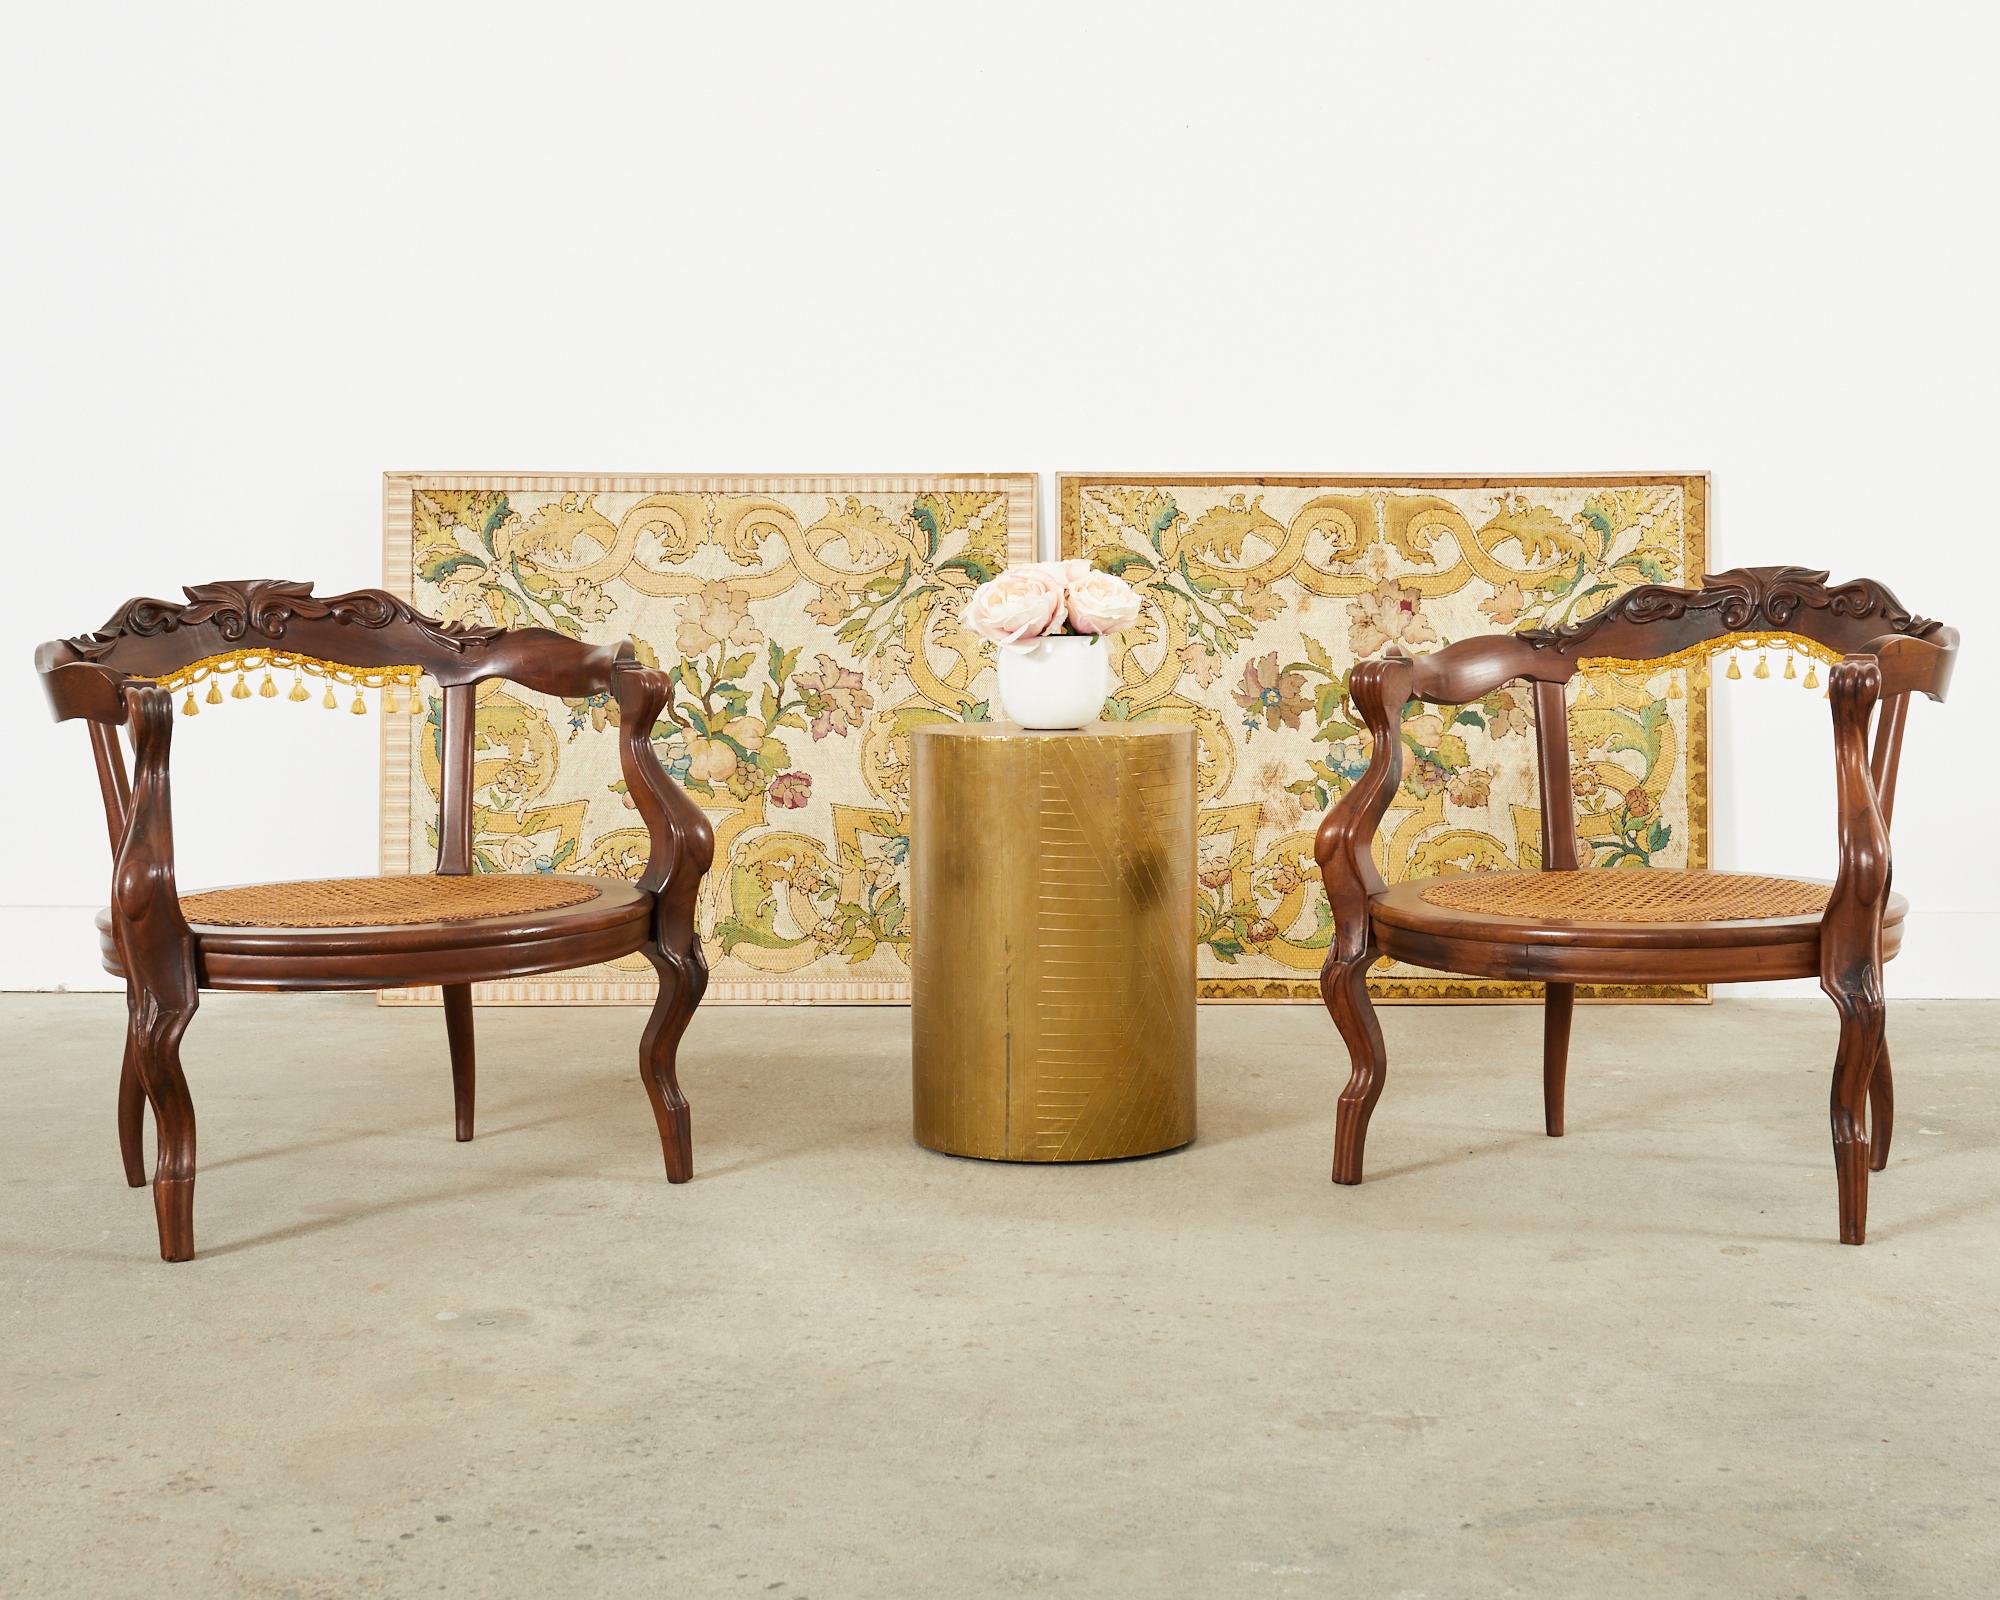 Skurriles Paar handgeschnitzter Hartholzsessel oder Dielenstühle im Stil des venezianischen Rokoko. Die Stühle haben eine runde Sitzfläche und ein Gestell in Form einer Tonnenlehne. Die großzügige Sitzfläche hat einen Rohrboden und anmutig